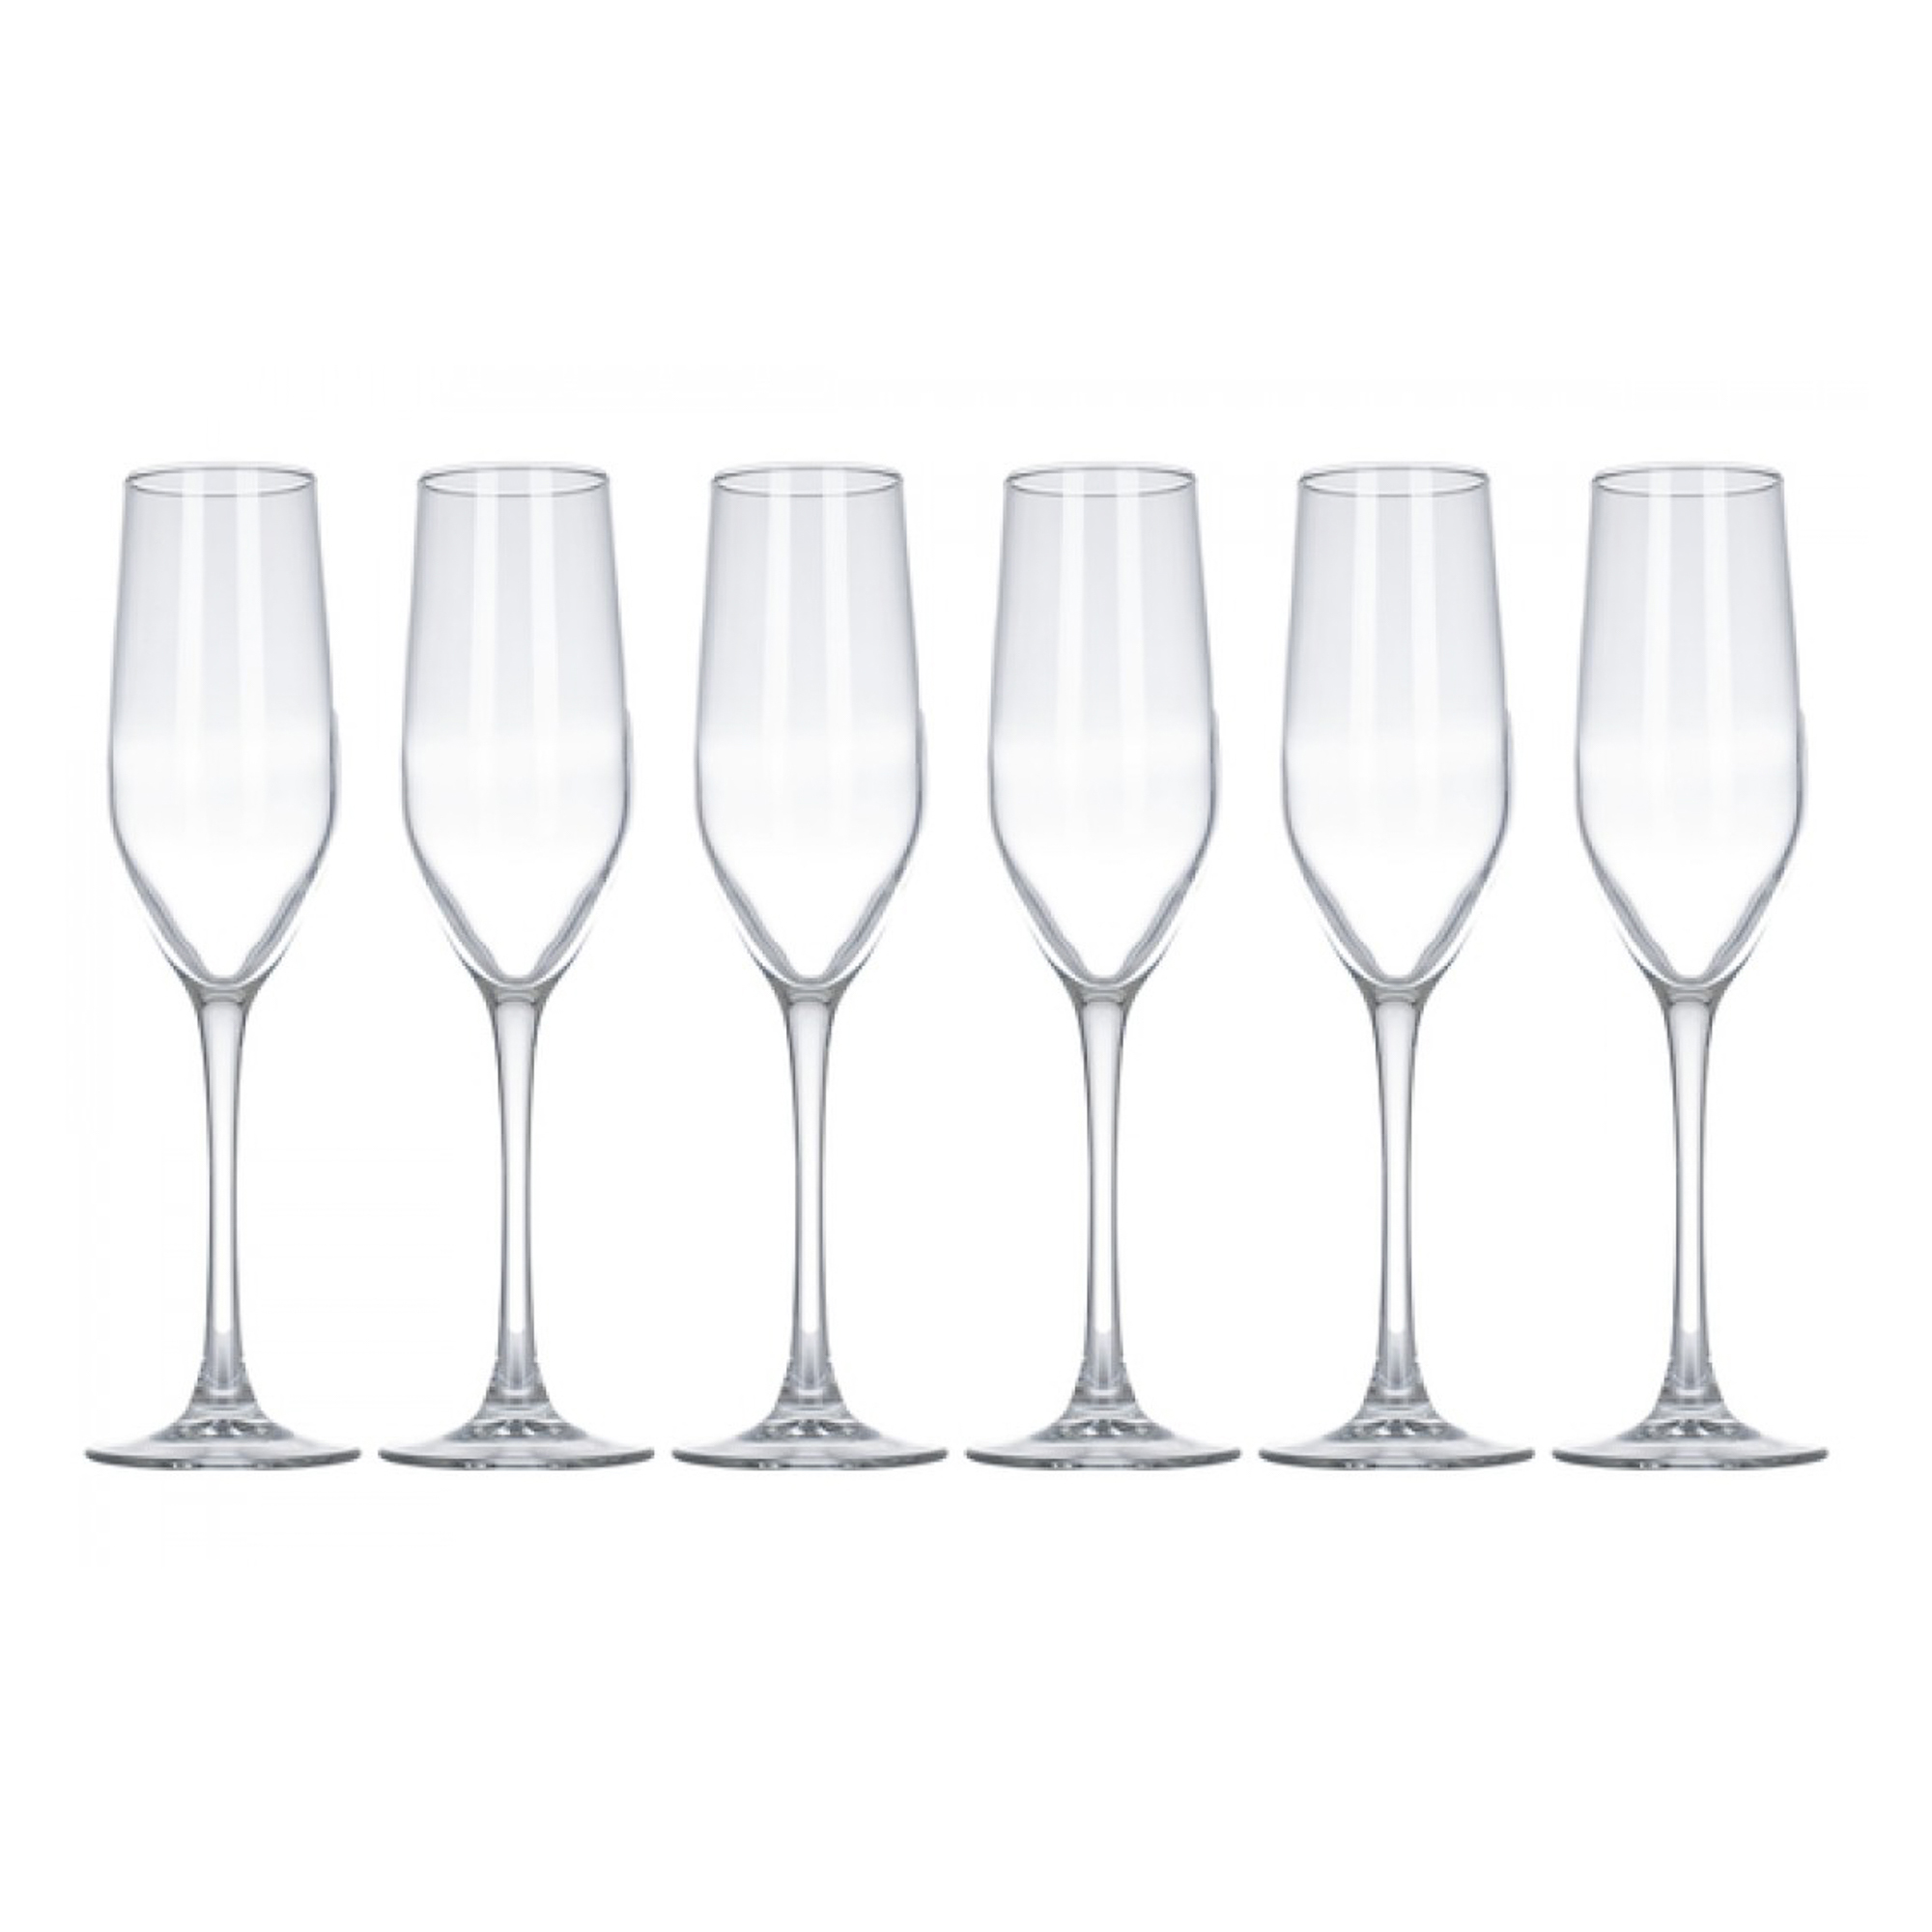 Набор бокалов для шампанского Luminarc селест 160мл 6шт набор бокалов luminarc селест золотистый хамелеон 6шт 160мл шампанское стекло